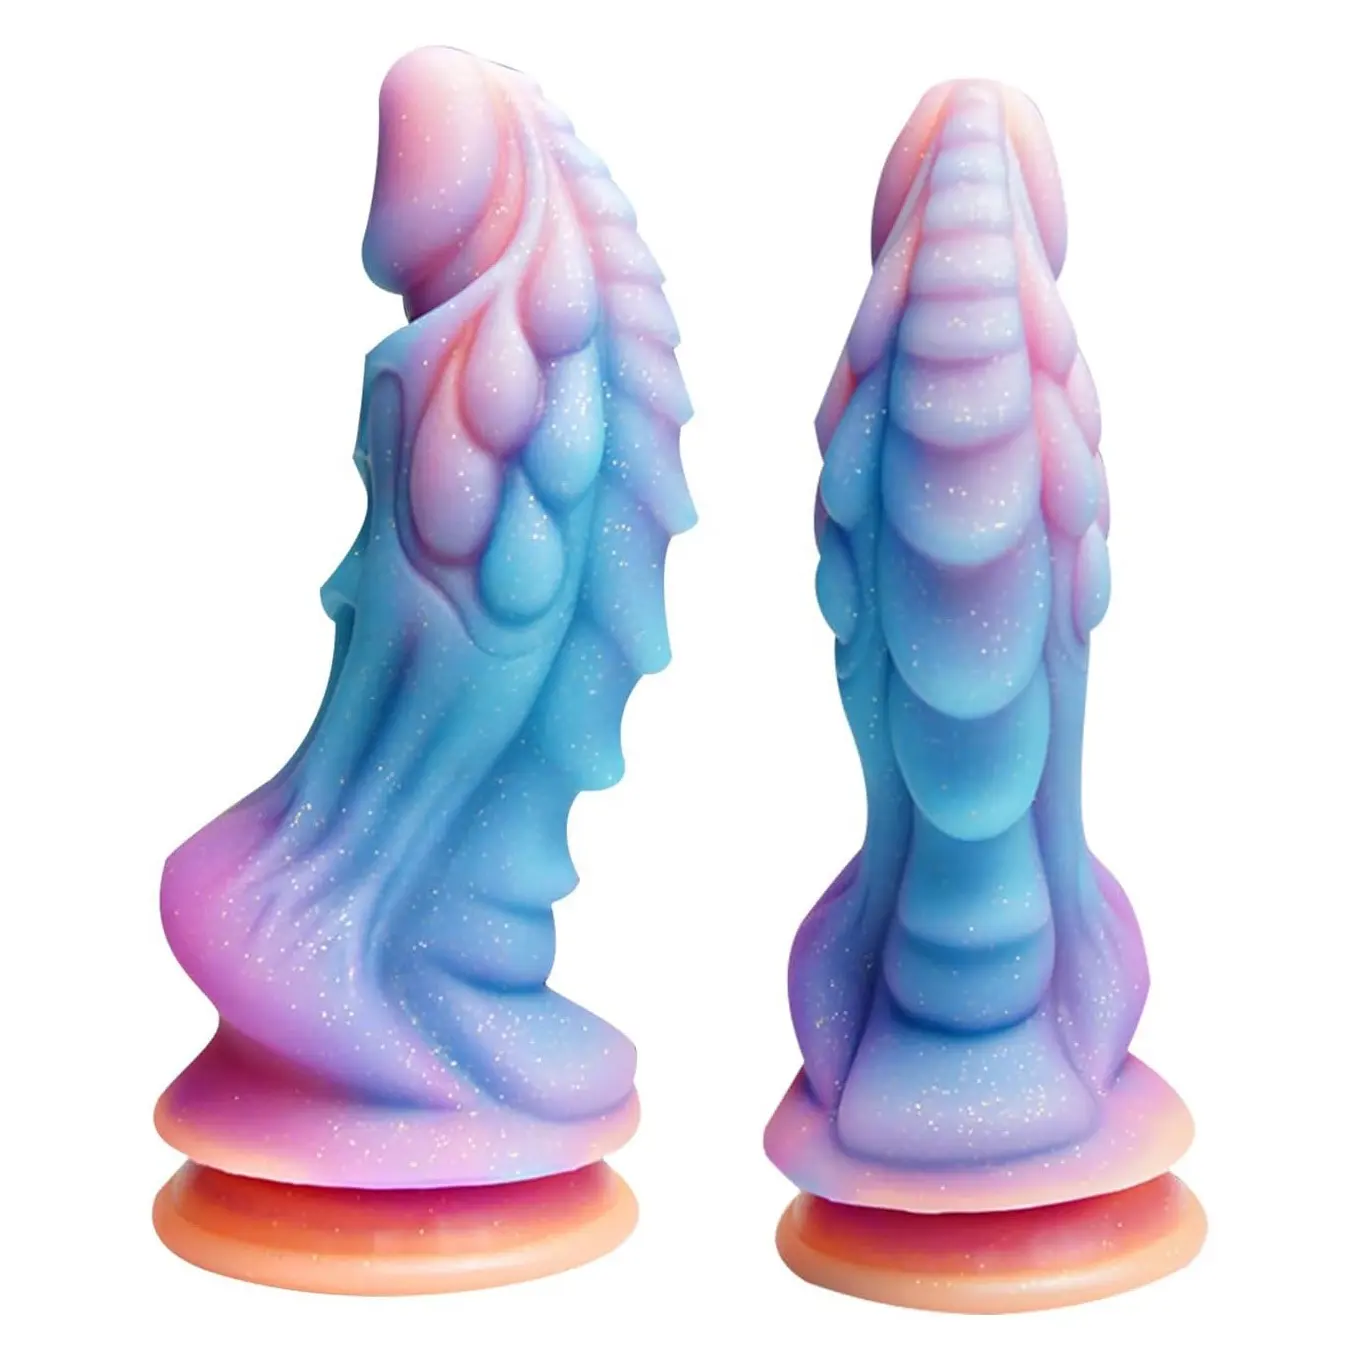 Gerçekçi yapay penis güçlü vantuz aydınlık yapay penis 22 cm popo fiş canavar yapay penis yumuşak silikon fiş büyük seks oyuncak kadınlar için erkekler